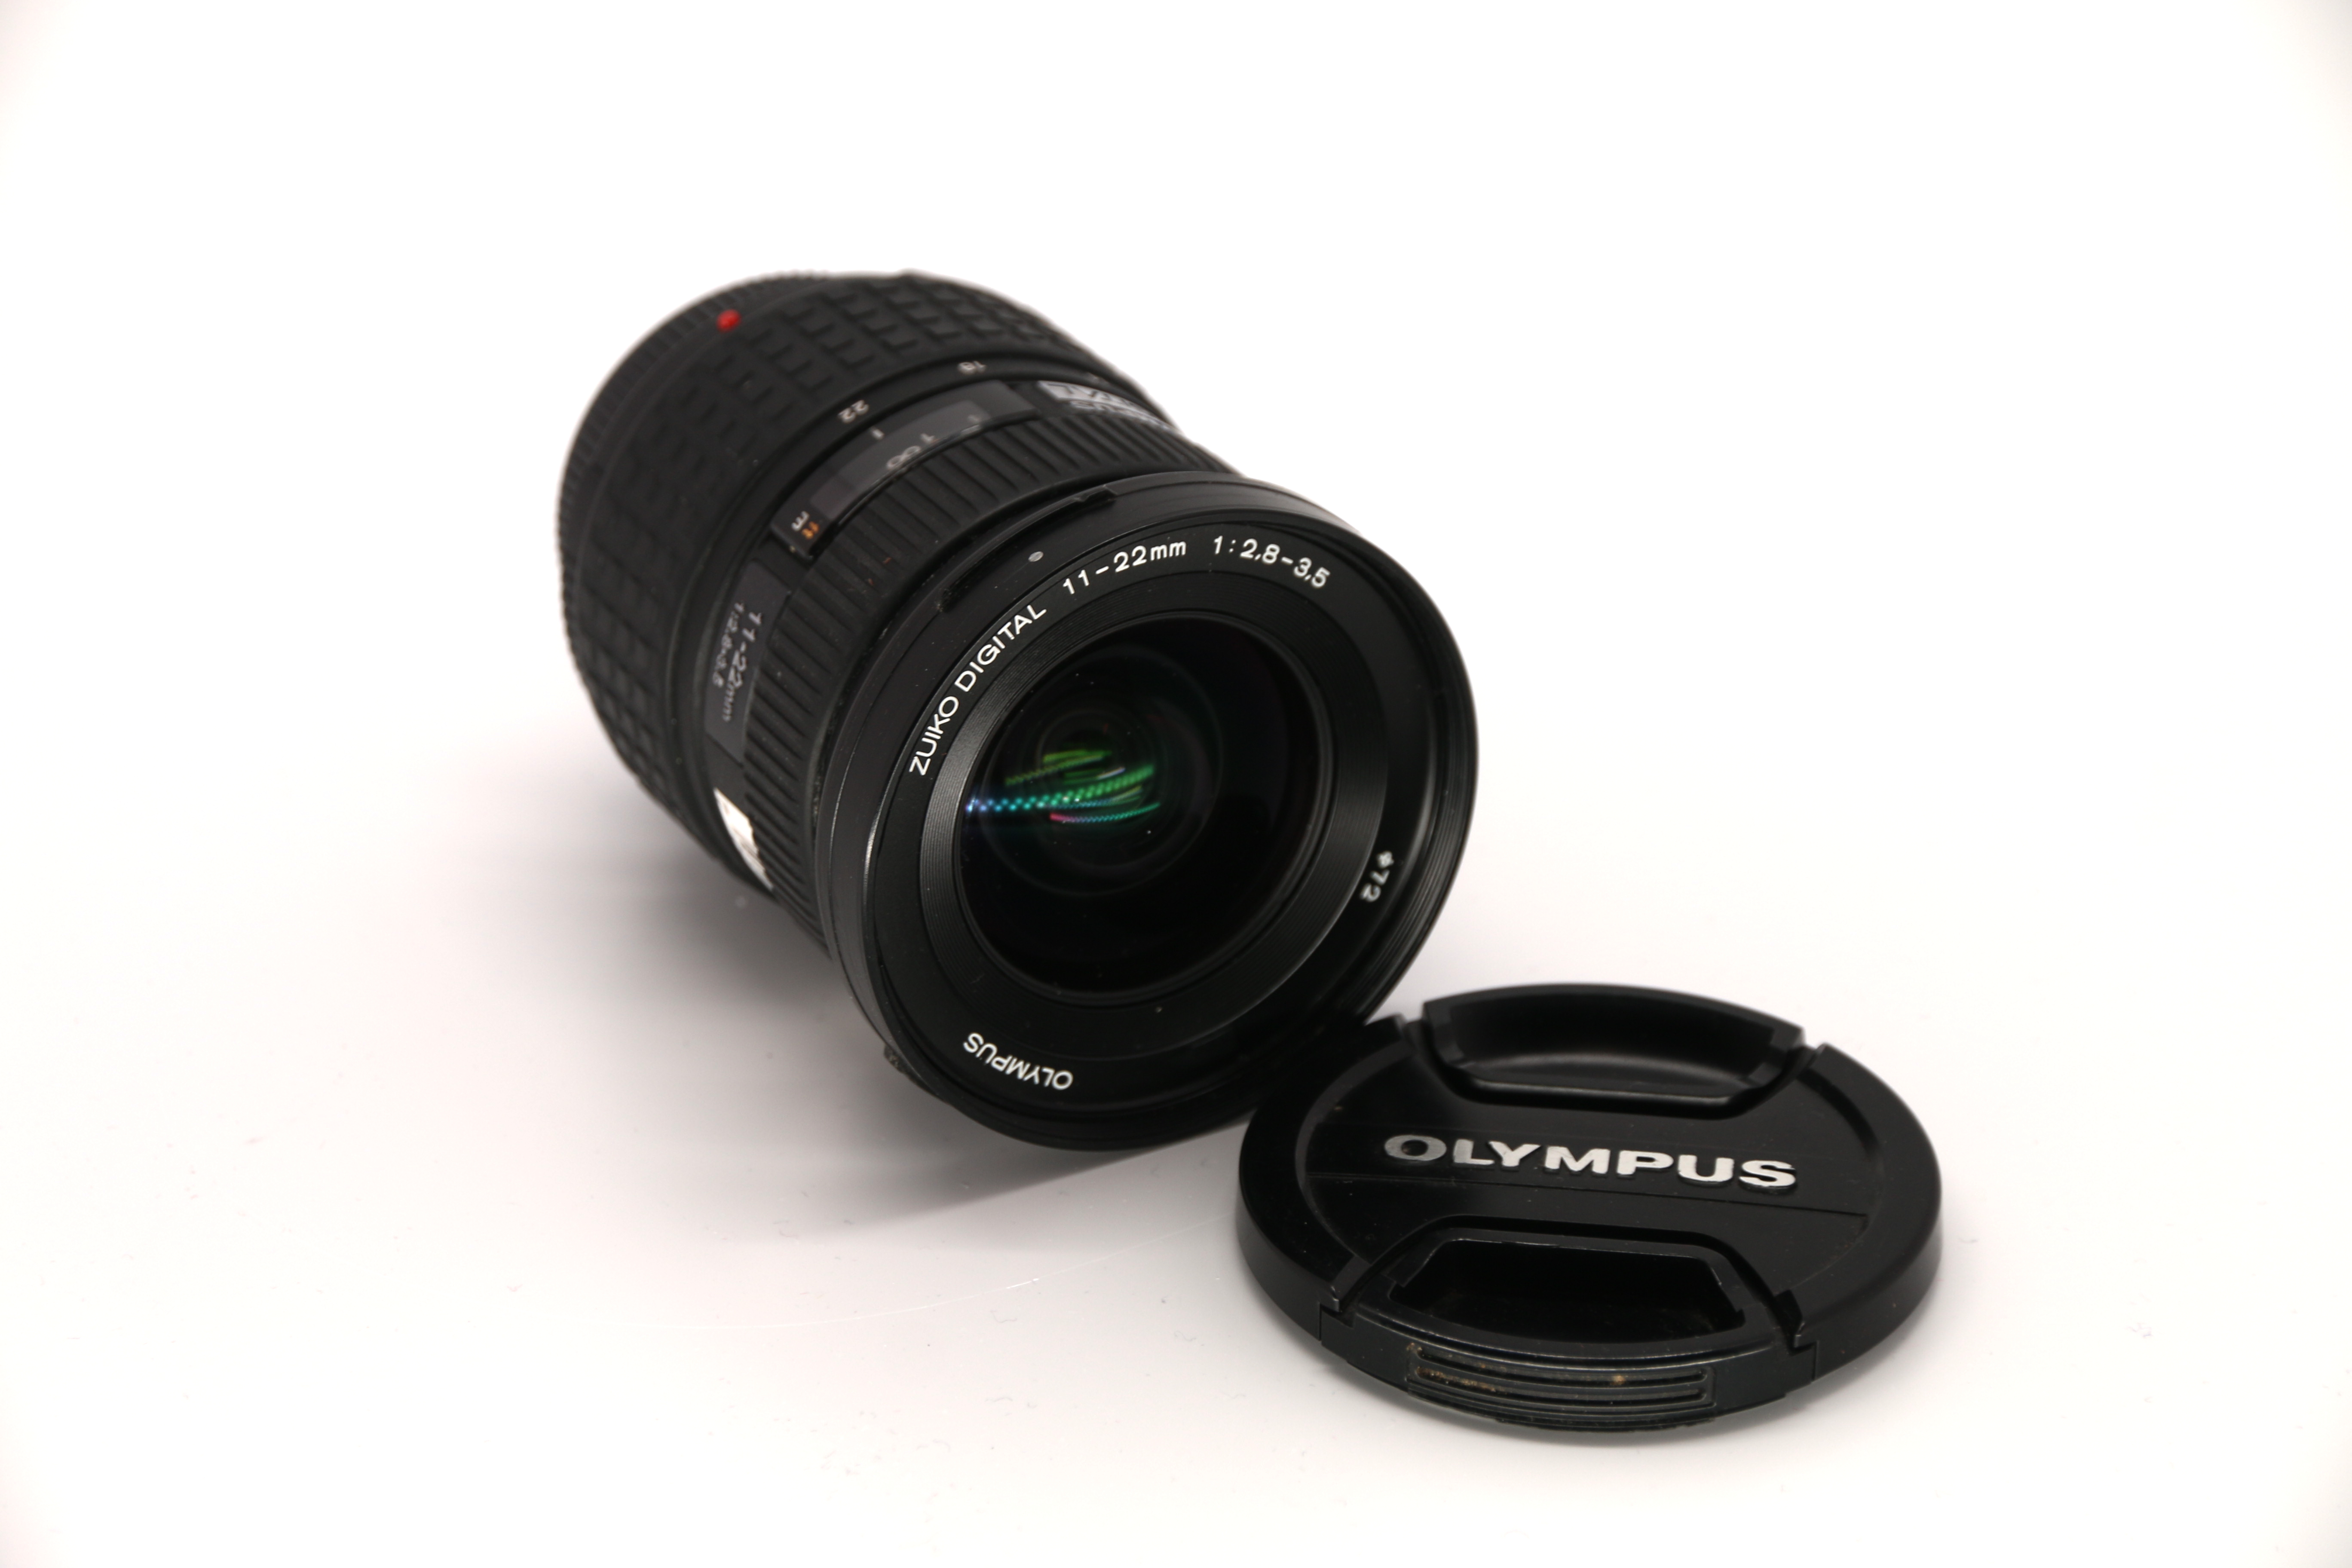 Olympus 11-22mm f2.8-3.5 gebraucht Bild 02